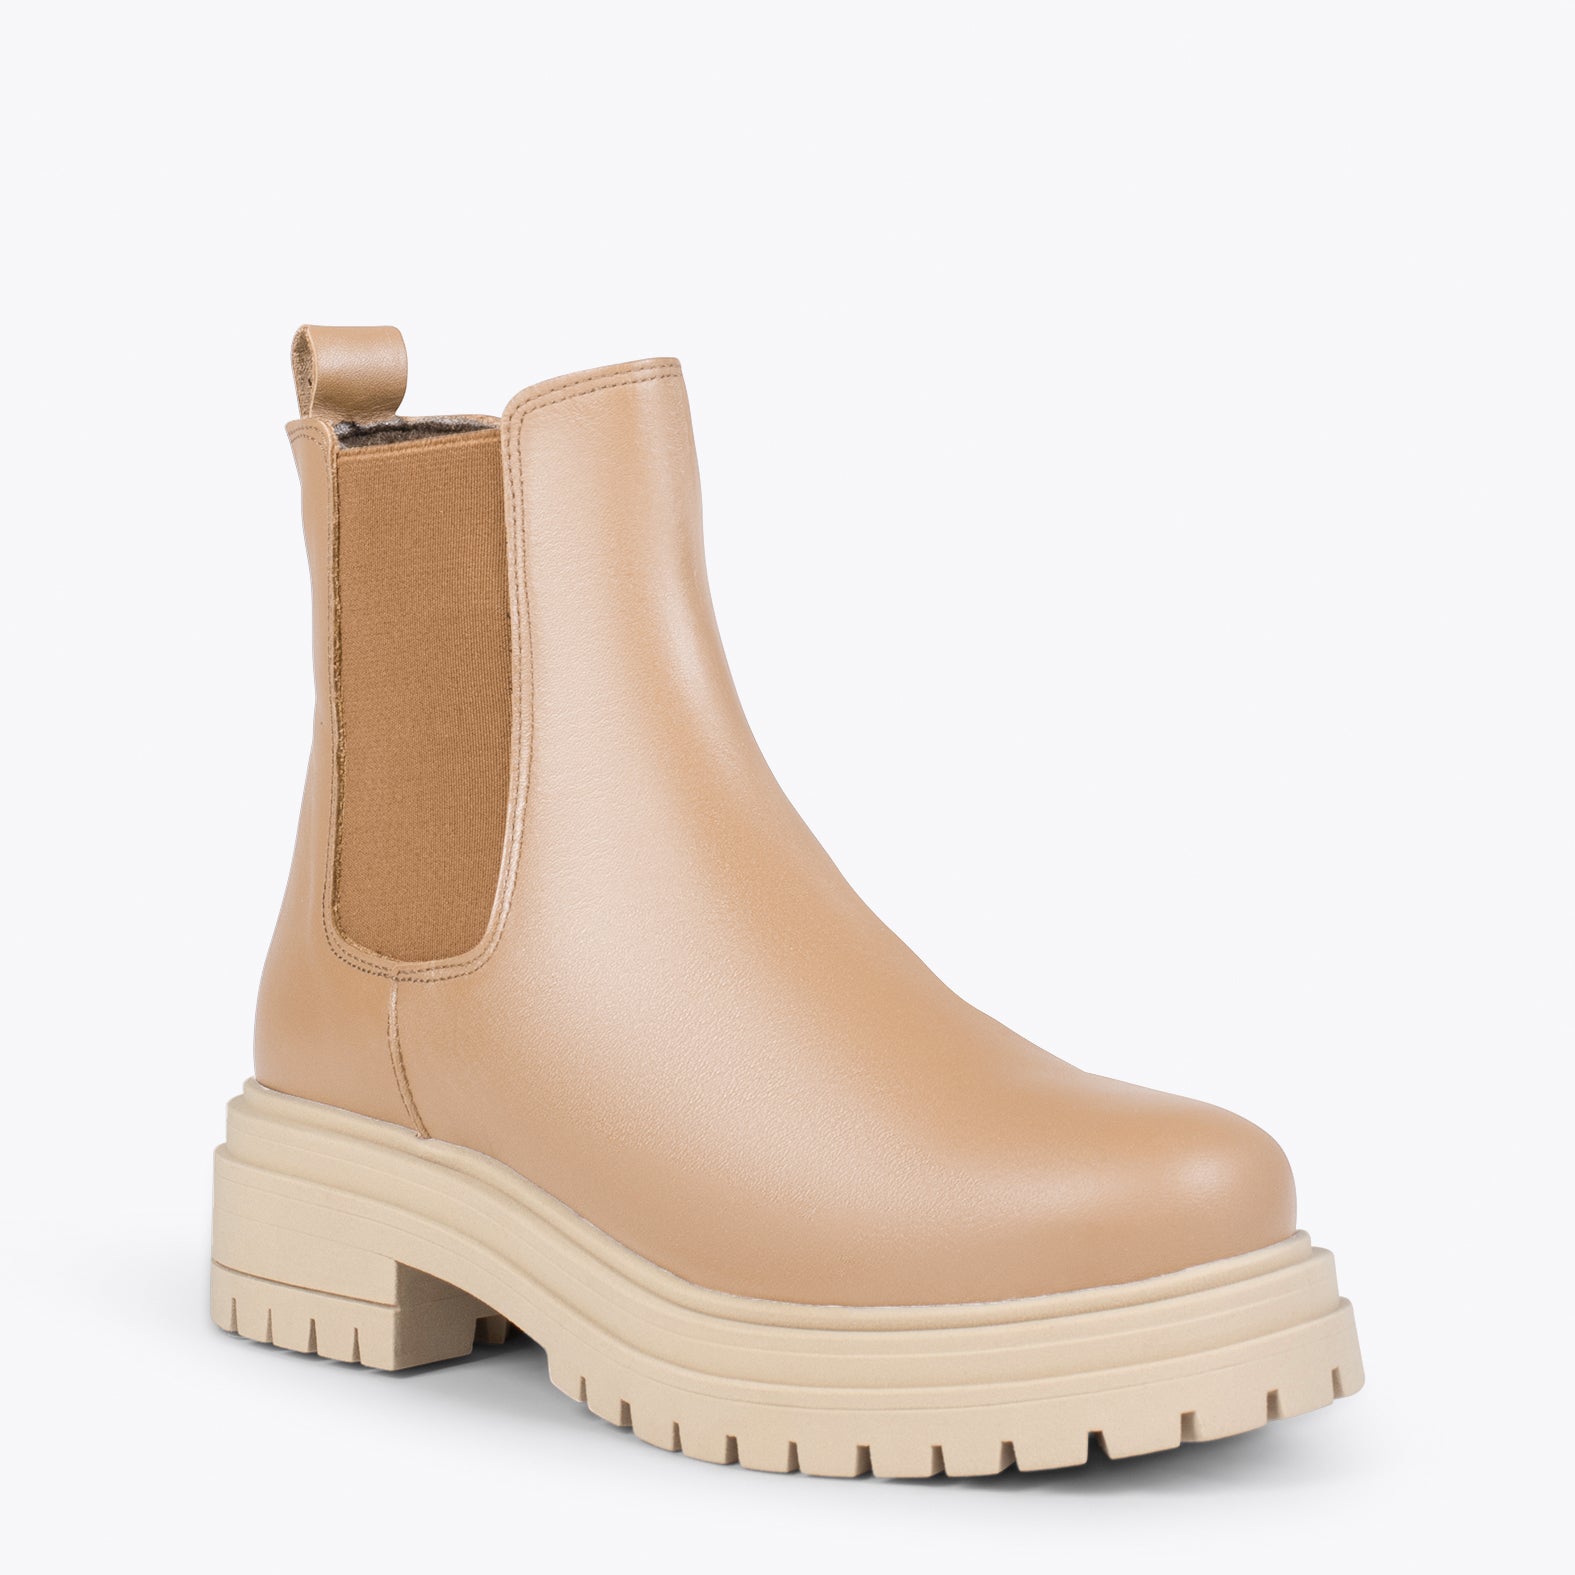 LEEDS – BEIGE leather booties with platform